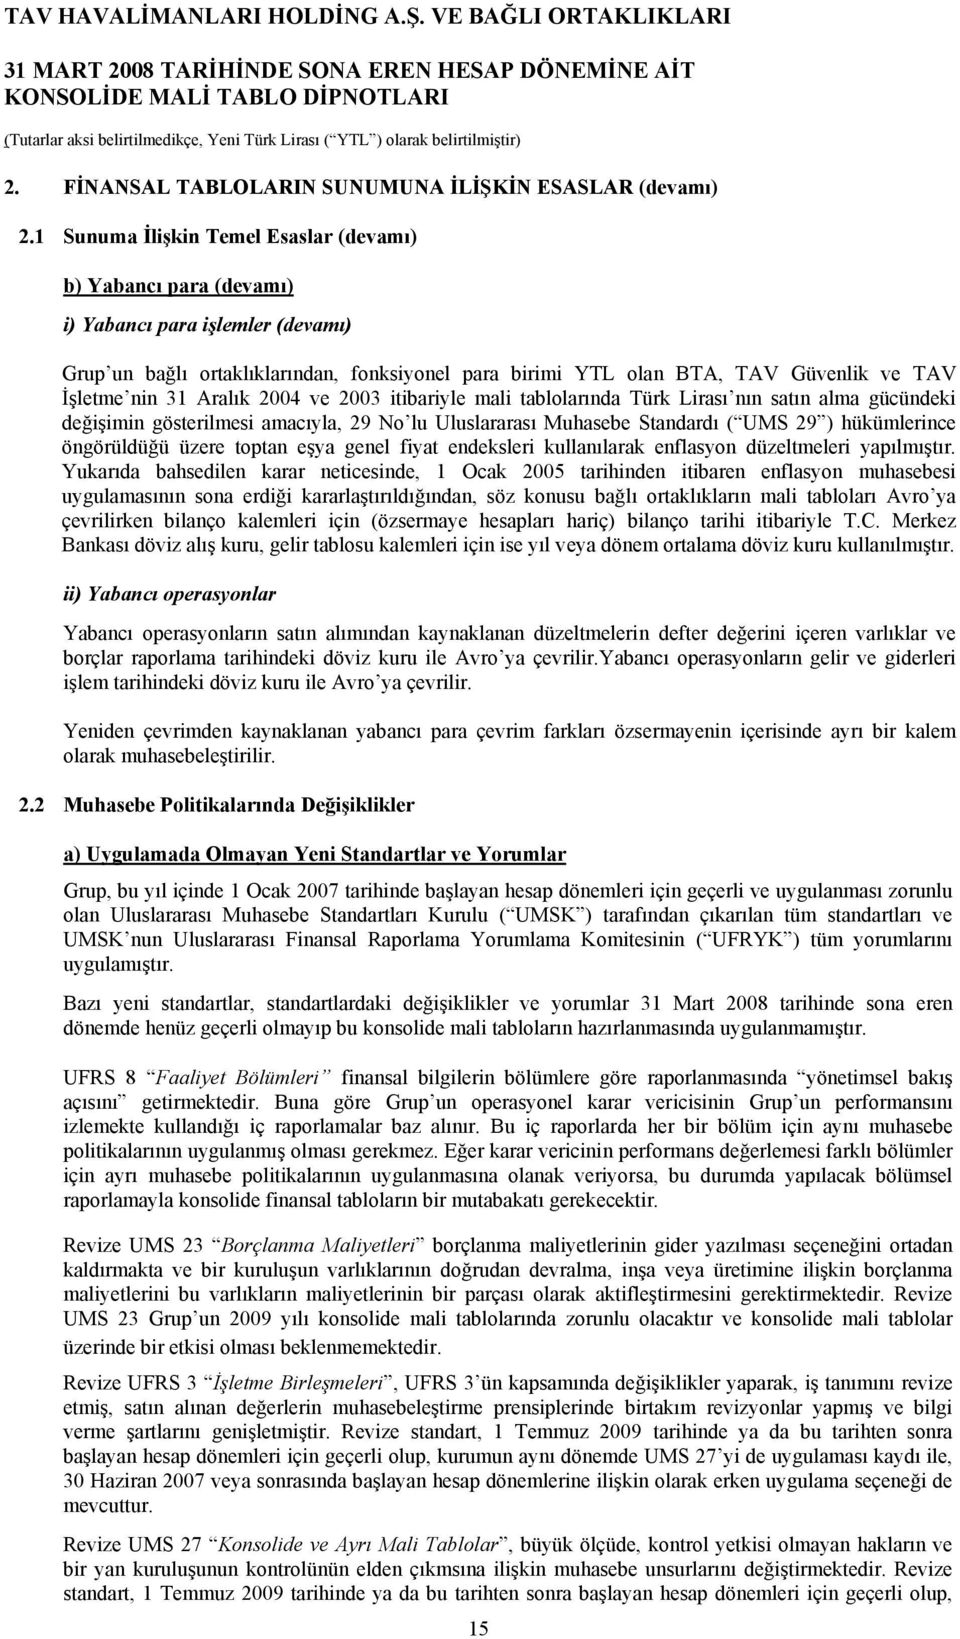 nin 31 Aralık 2004 ve 2003 itibariyle mali tablolarında Türk Lirası nın satın alma gücündeki değişimin gösterilmesi amacıyla, 29 No lu Uluslararası Muhasebe Standardı ( UMS 29 ) hükümlerince